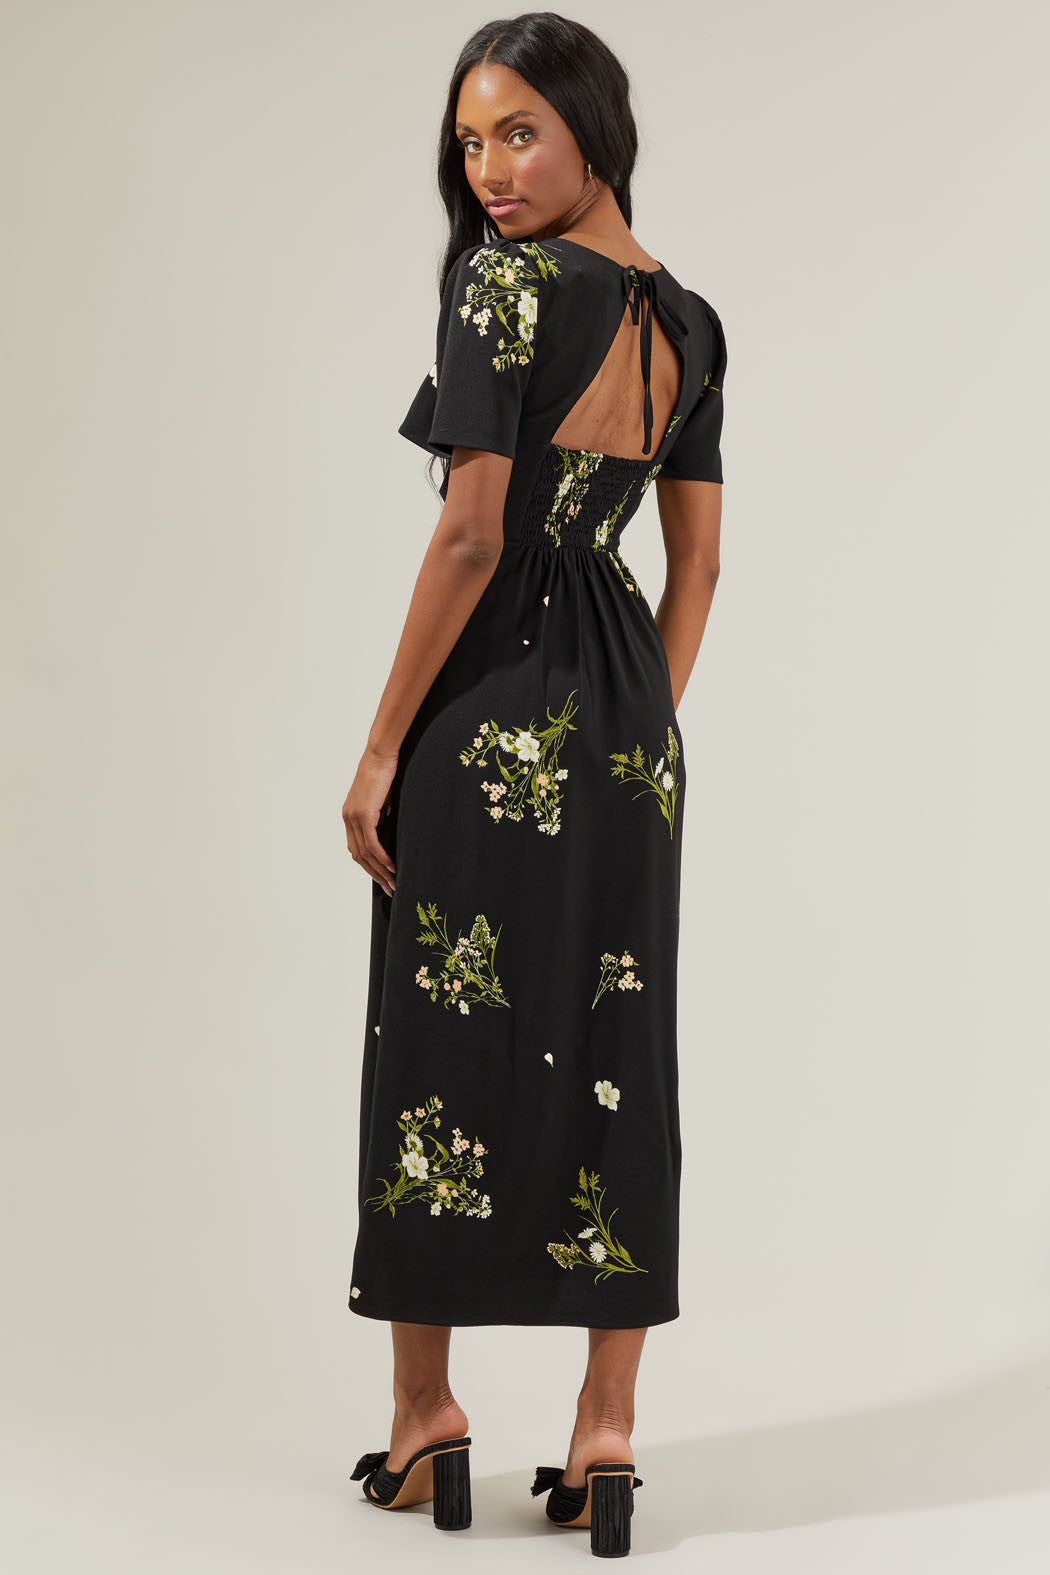 The Jenna Floral Midi Dress